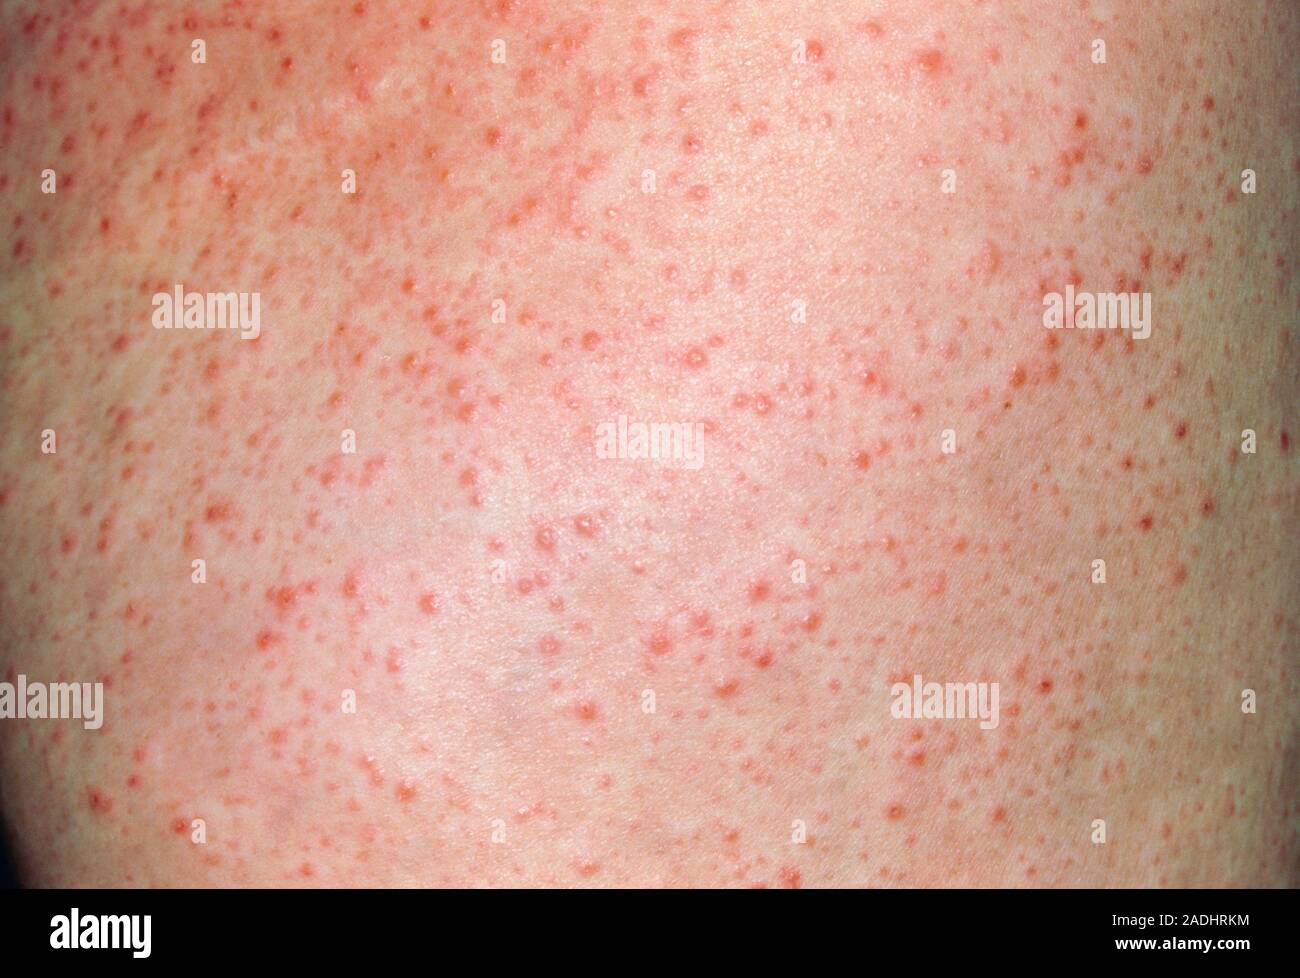 Reazione allergica a crema cosmetica. Una eruzione cutanea rossa sul corpo  di un 49-anno-vecchia donna causata da allergia a anti-cellulite crema  cosmetica. Questa reazione Foto stock - Alamy